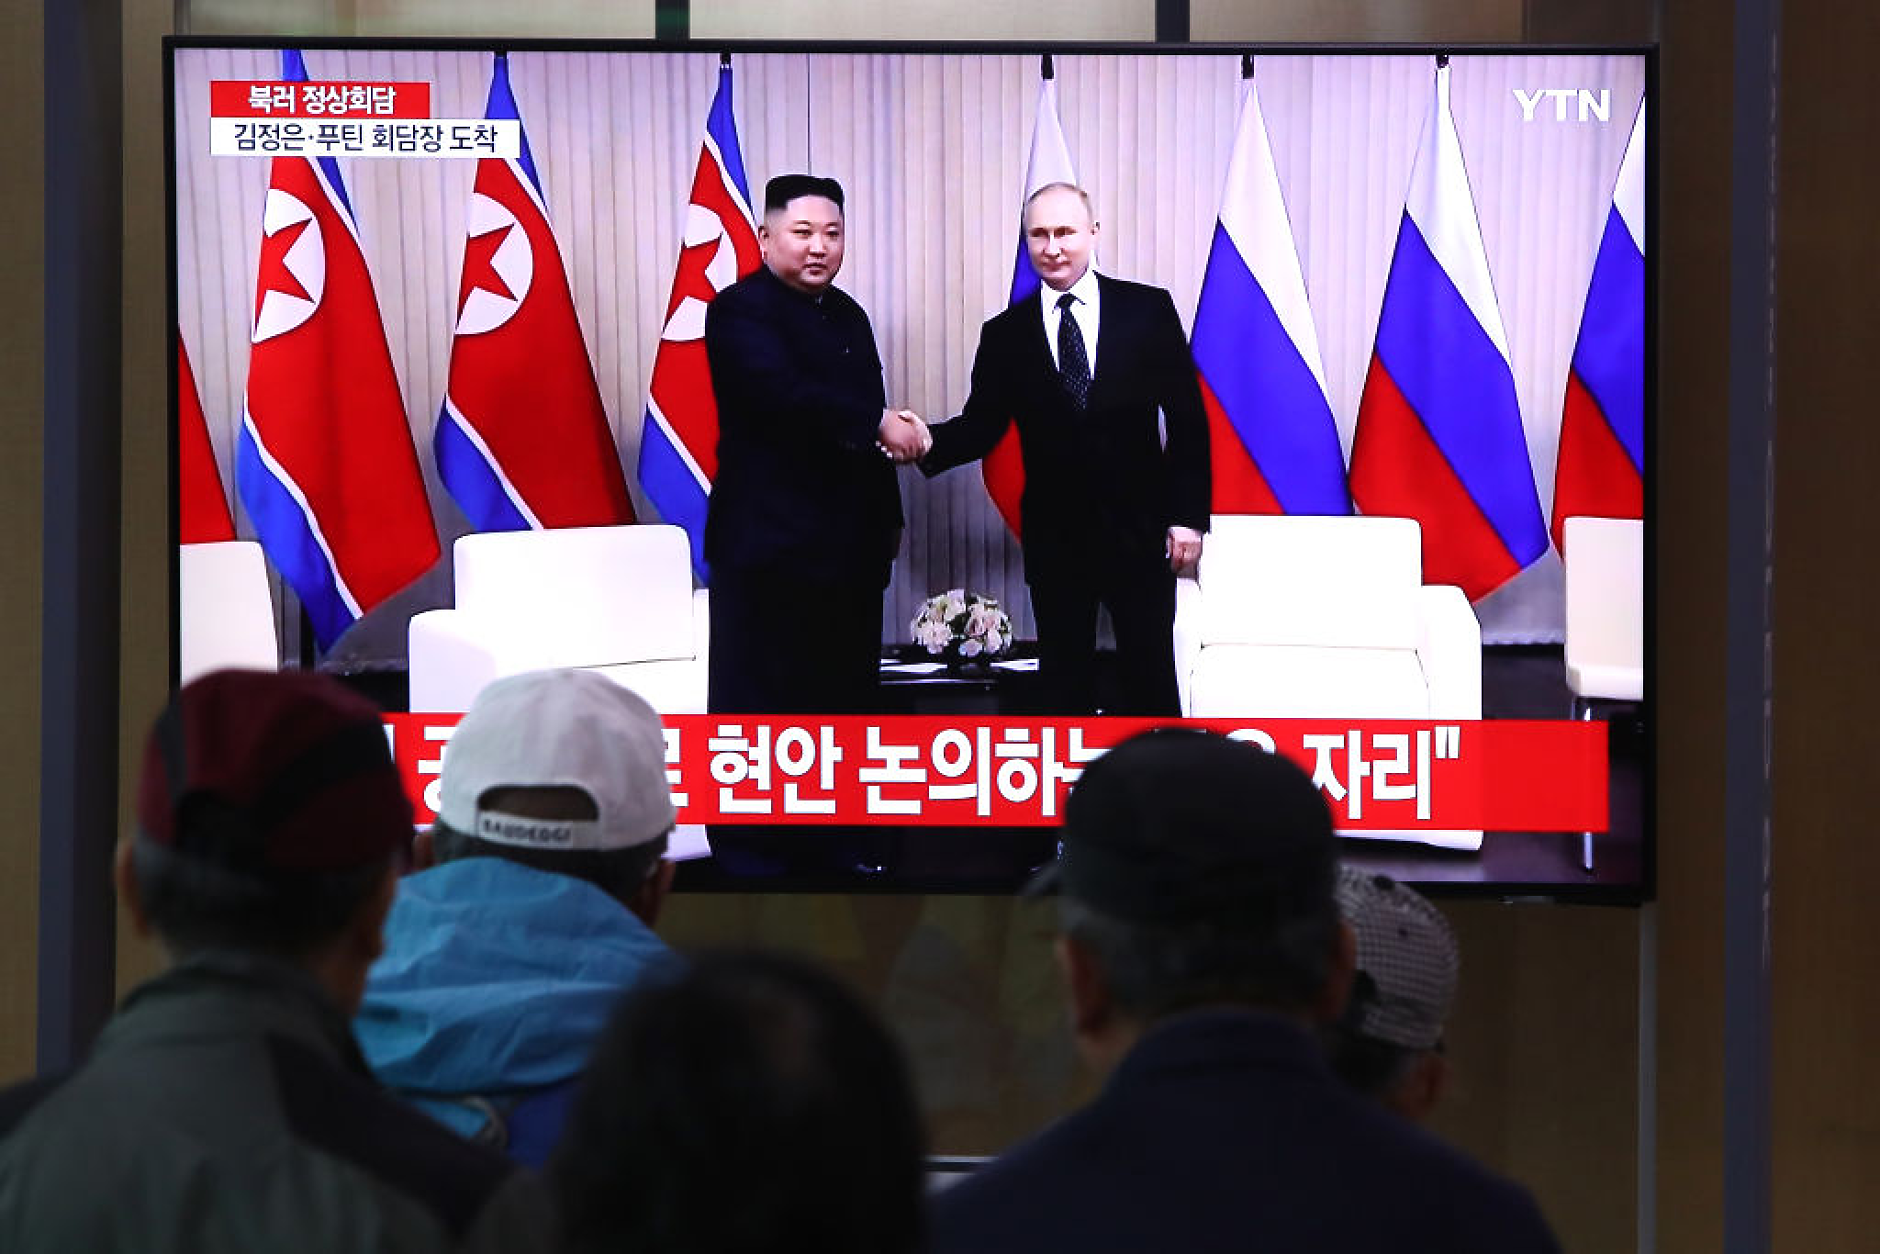  Ким Чен-ун се зарече да се държи „ръка за ръка“ с Путин